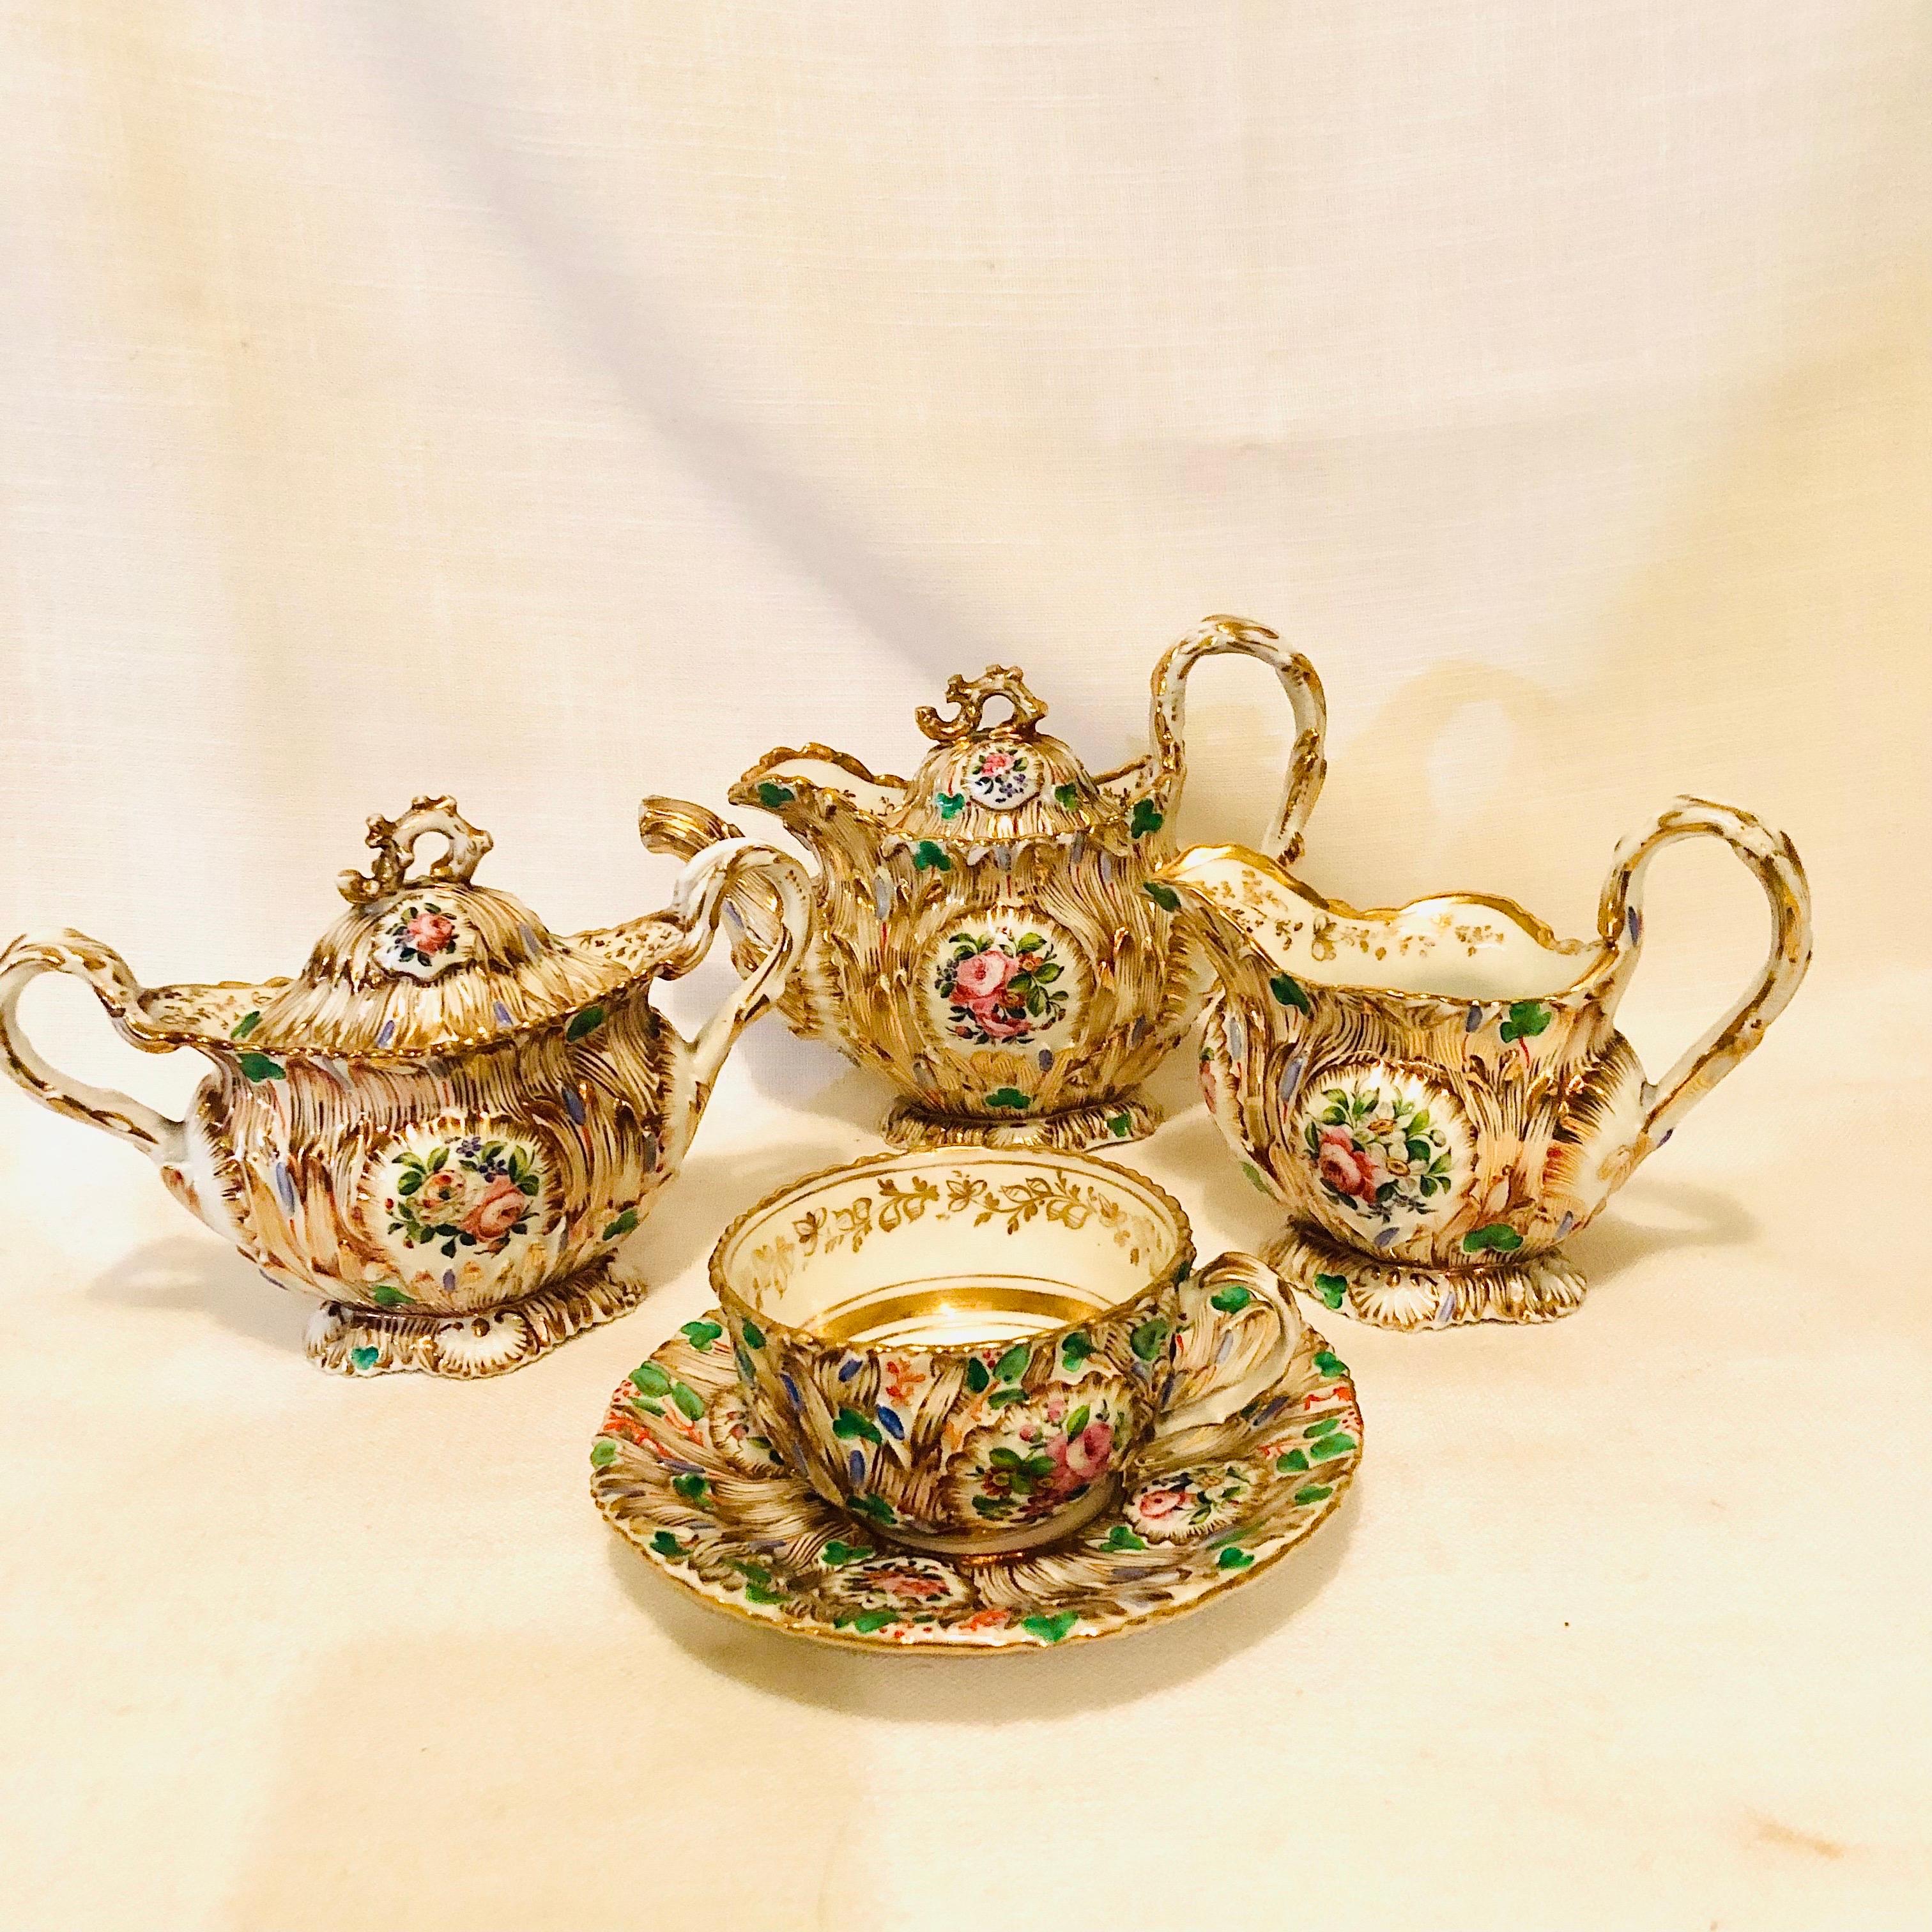 Il s'agit d'un fabuleux service à thé en porcelaine Jacob Petit Old Paris solitaire de qualité musée. Il est abondamment décoré d'or, de cartouches de fleurs et de nombreuses couleurs dans le style rococo, ce qui est un régal pour les yeux. Ce